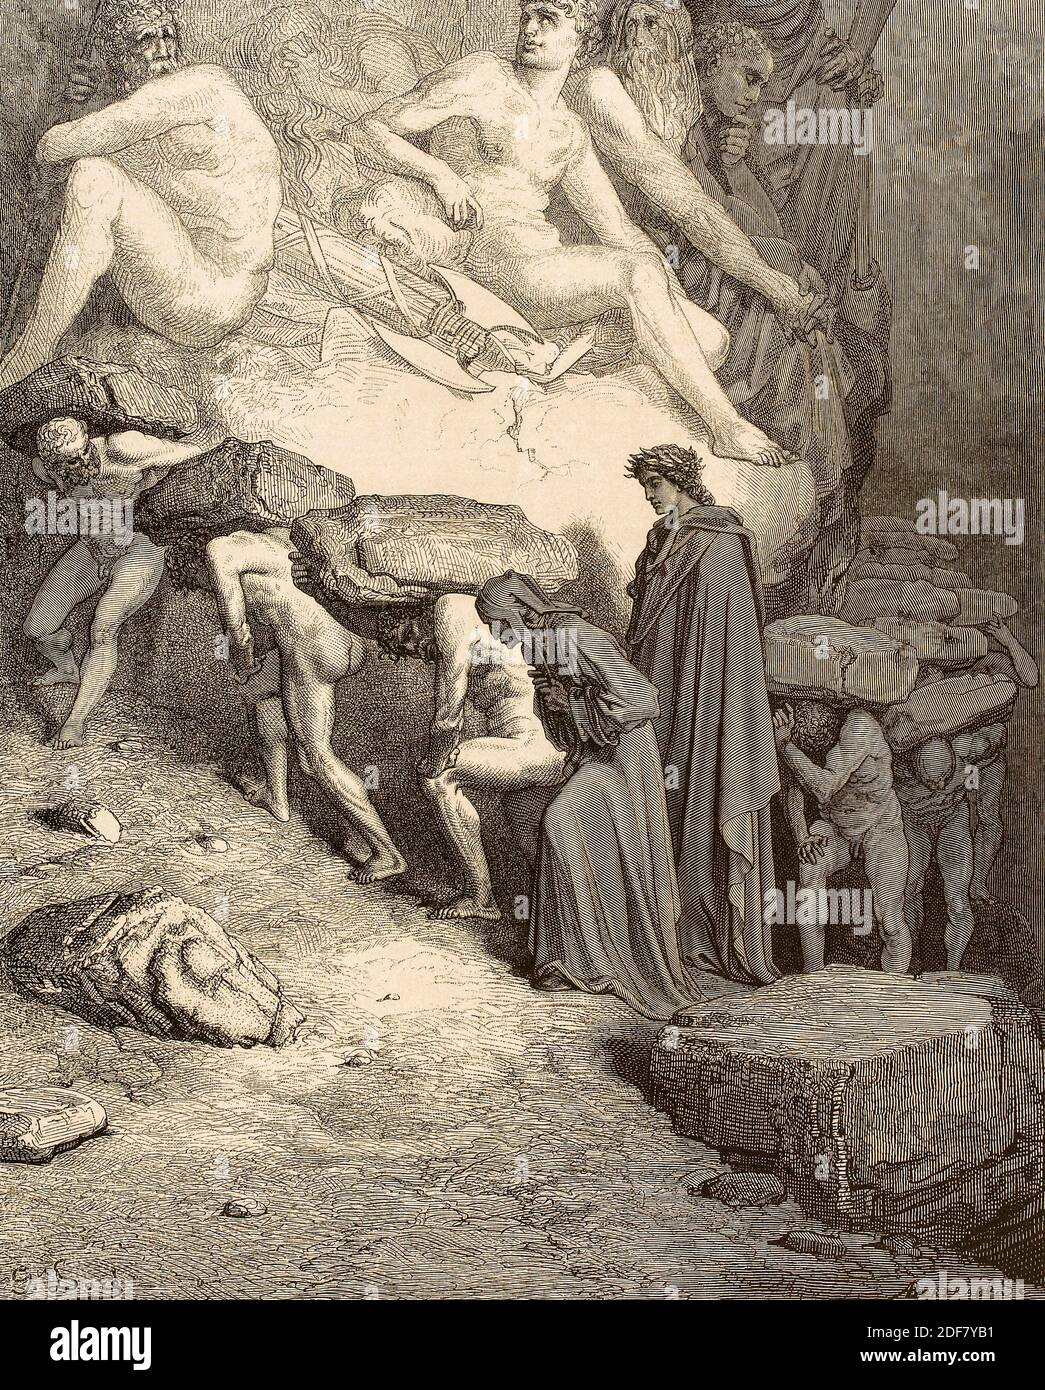 Dante - Divina Commedia - Purgatorio - Ilustración de Gustave Dorè - canto XII- el orgulloso de entre ellos Omberto Aldobrandeschi Foto de stock